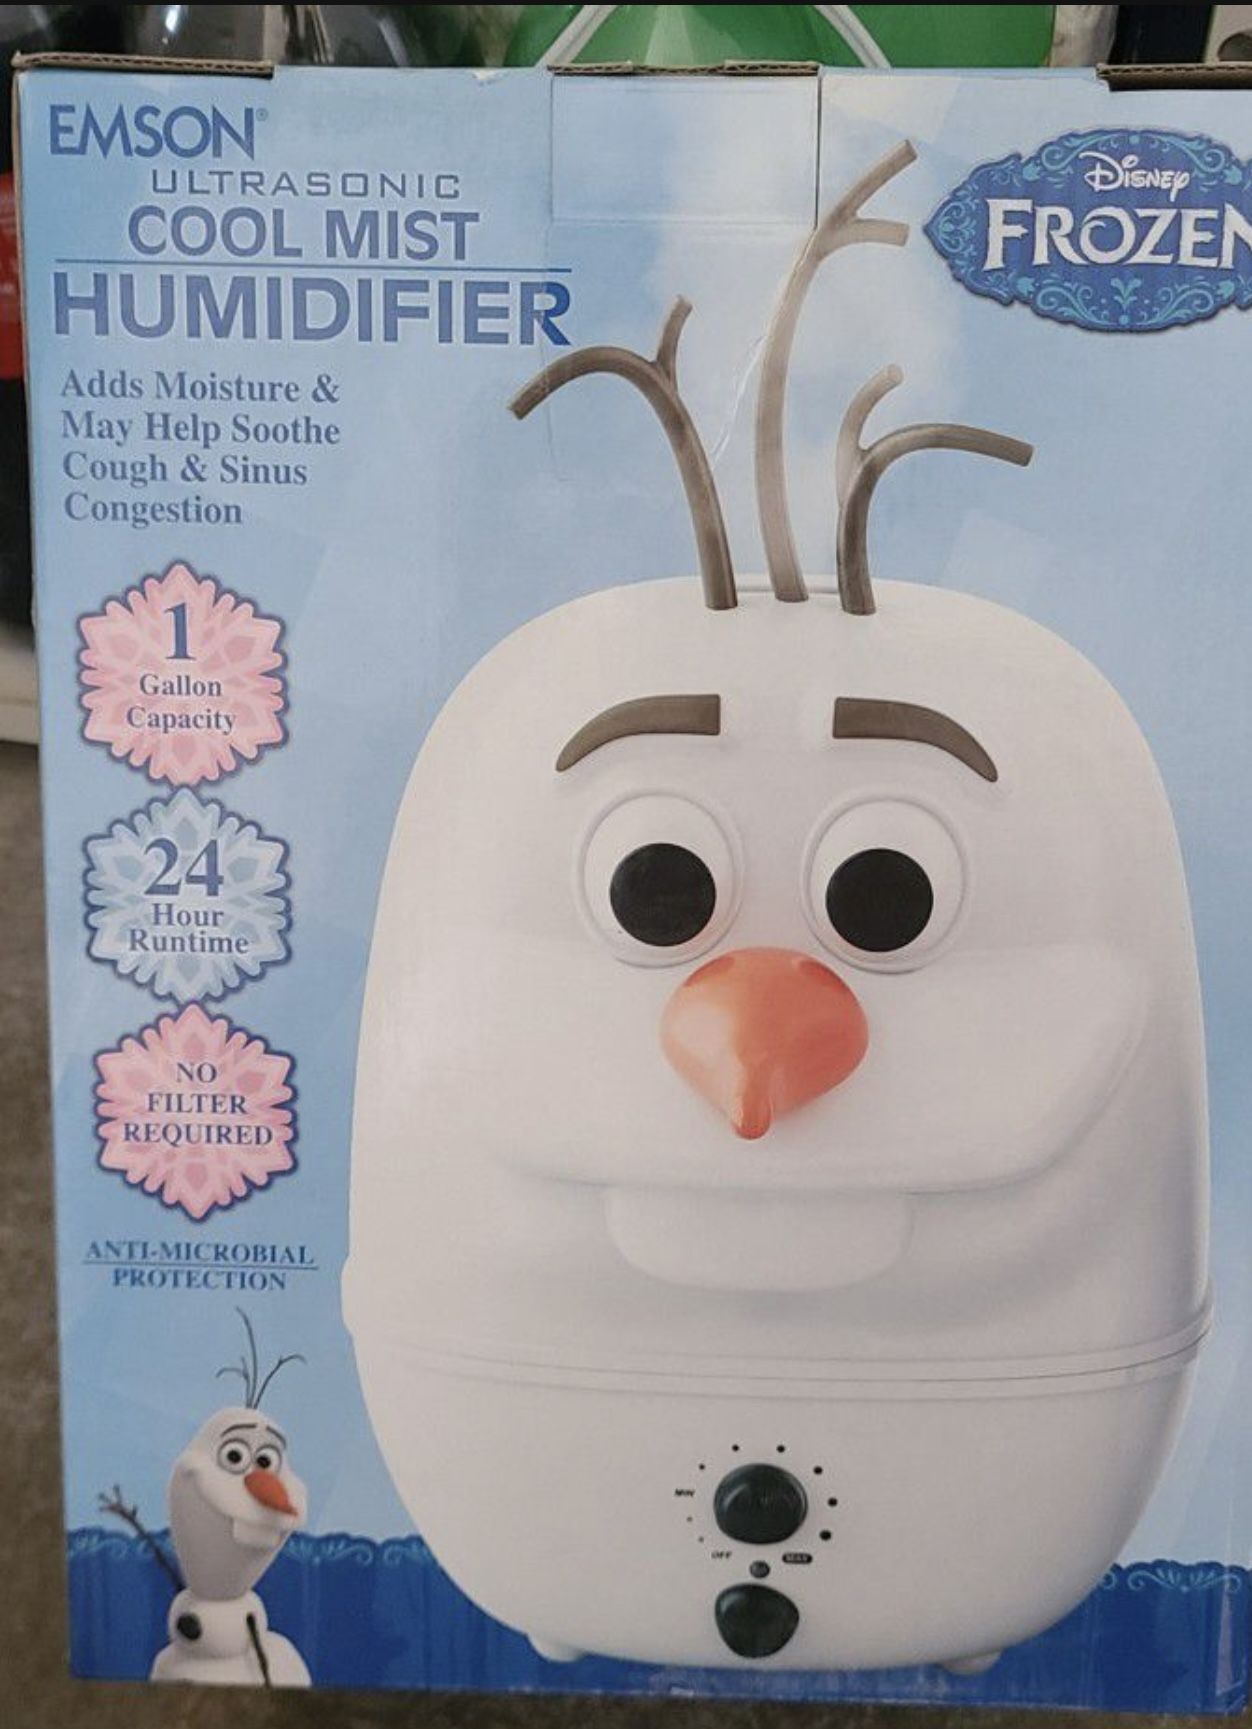 Humidifier 